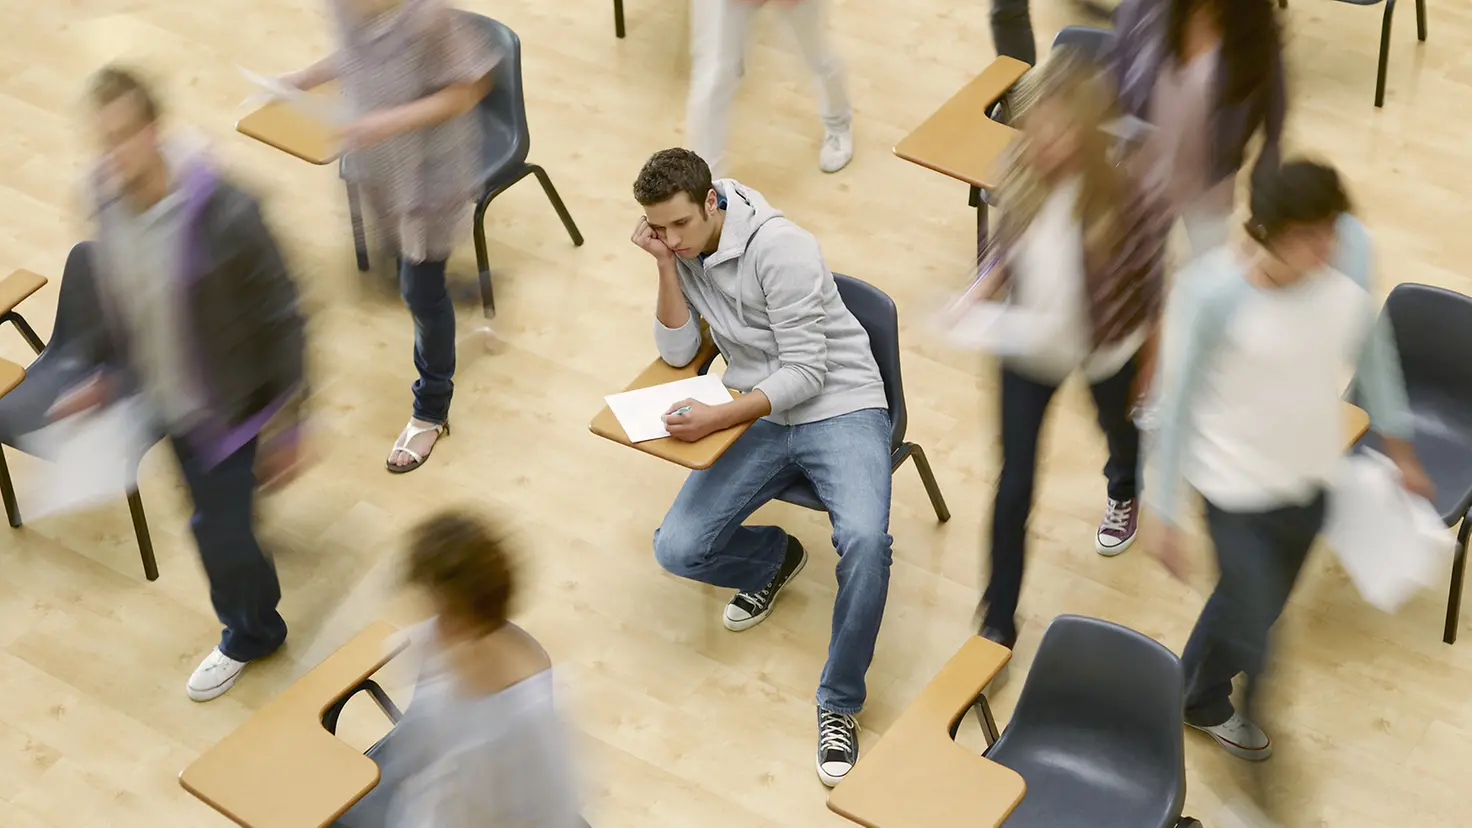 Student sitzt niedergeschlagen umgeben von wuselnden Studenten im Hörsaal